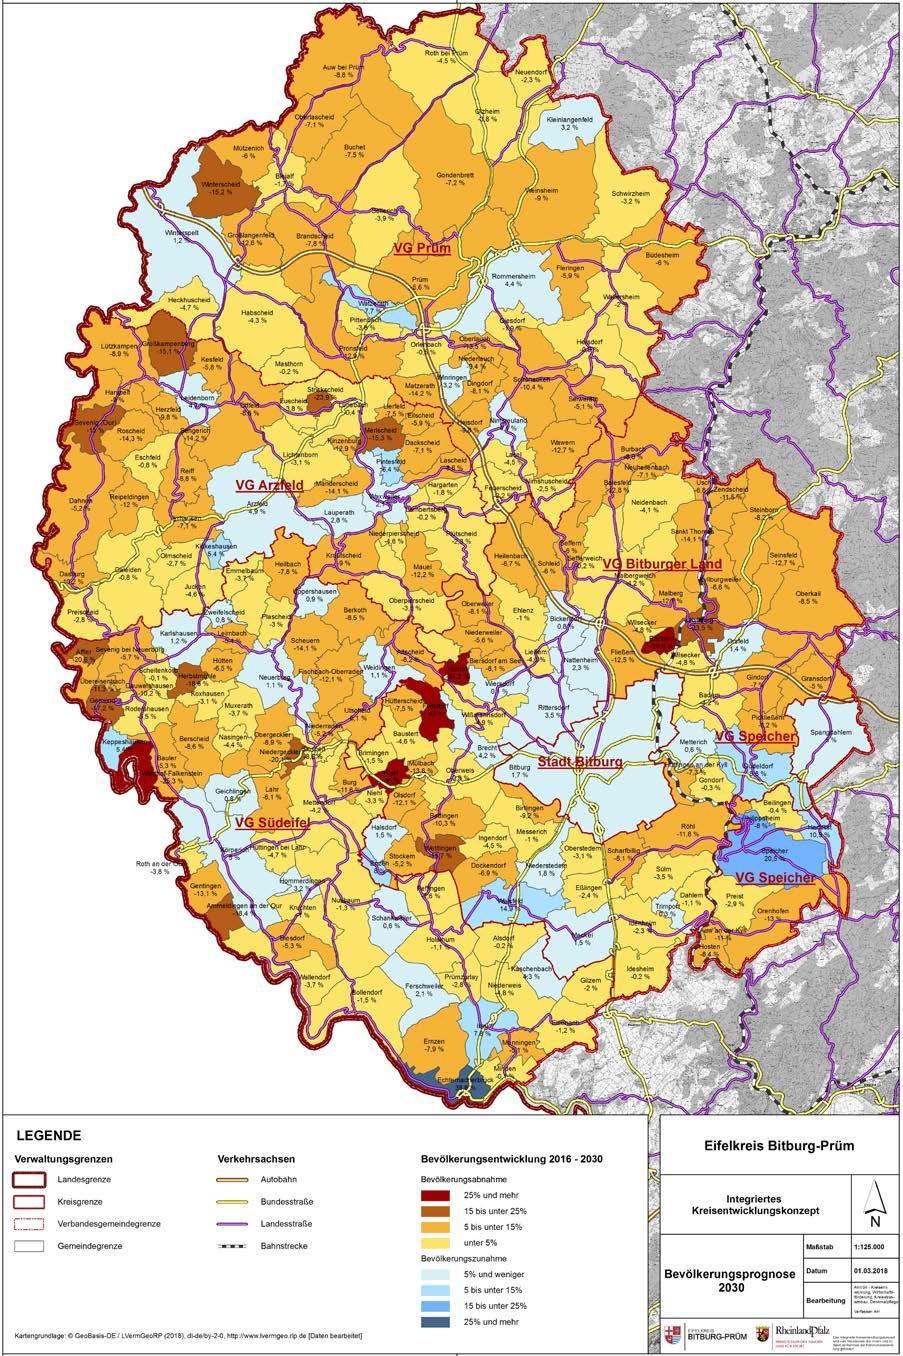 Abb. 9: Beispielkarte Kleinräumige Bevölkerungsprognose 2030 Eifelkreis Bitburg-Prüm; Quelle: